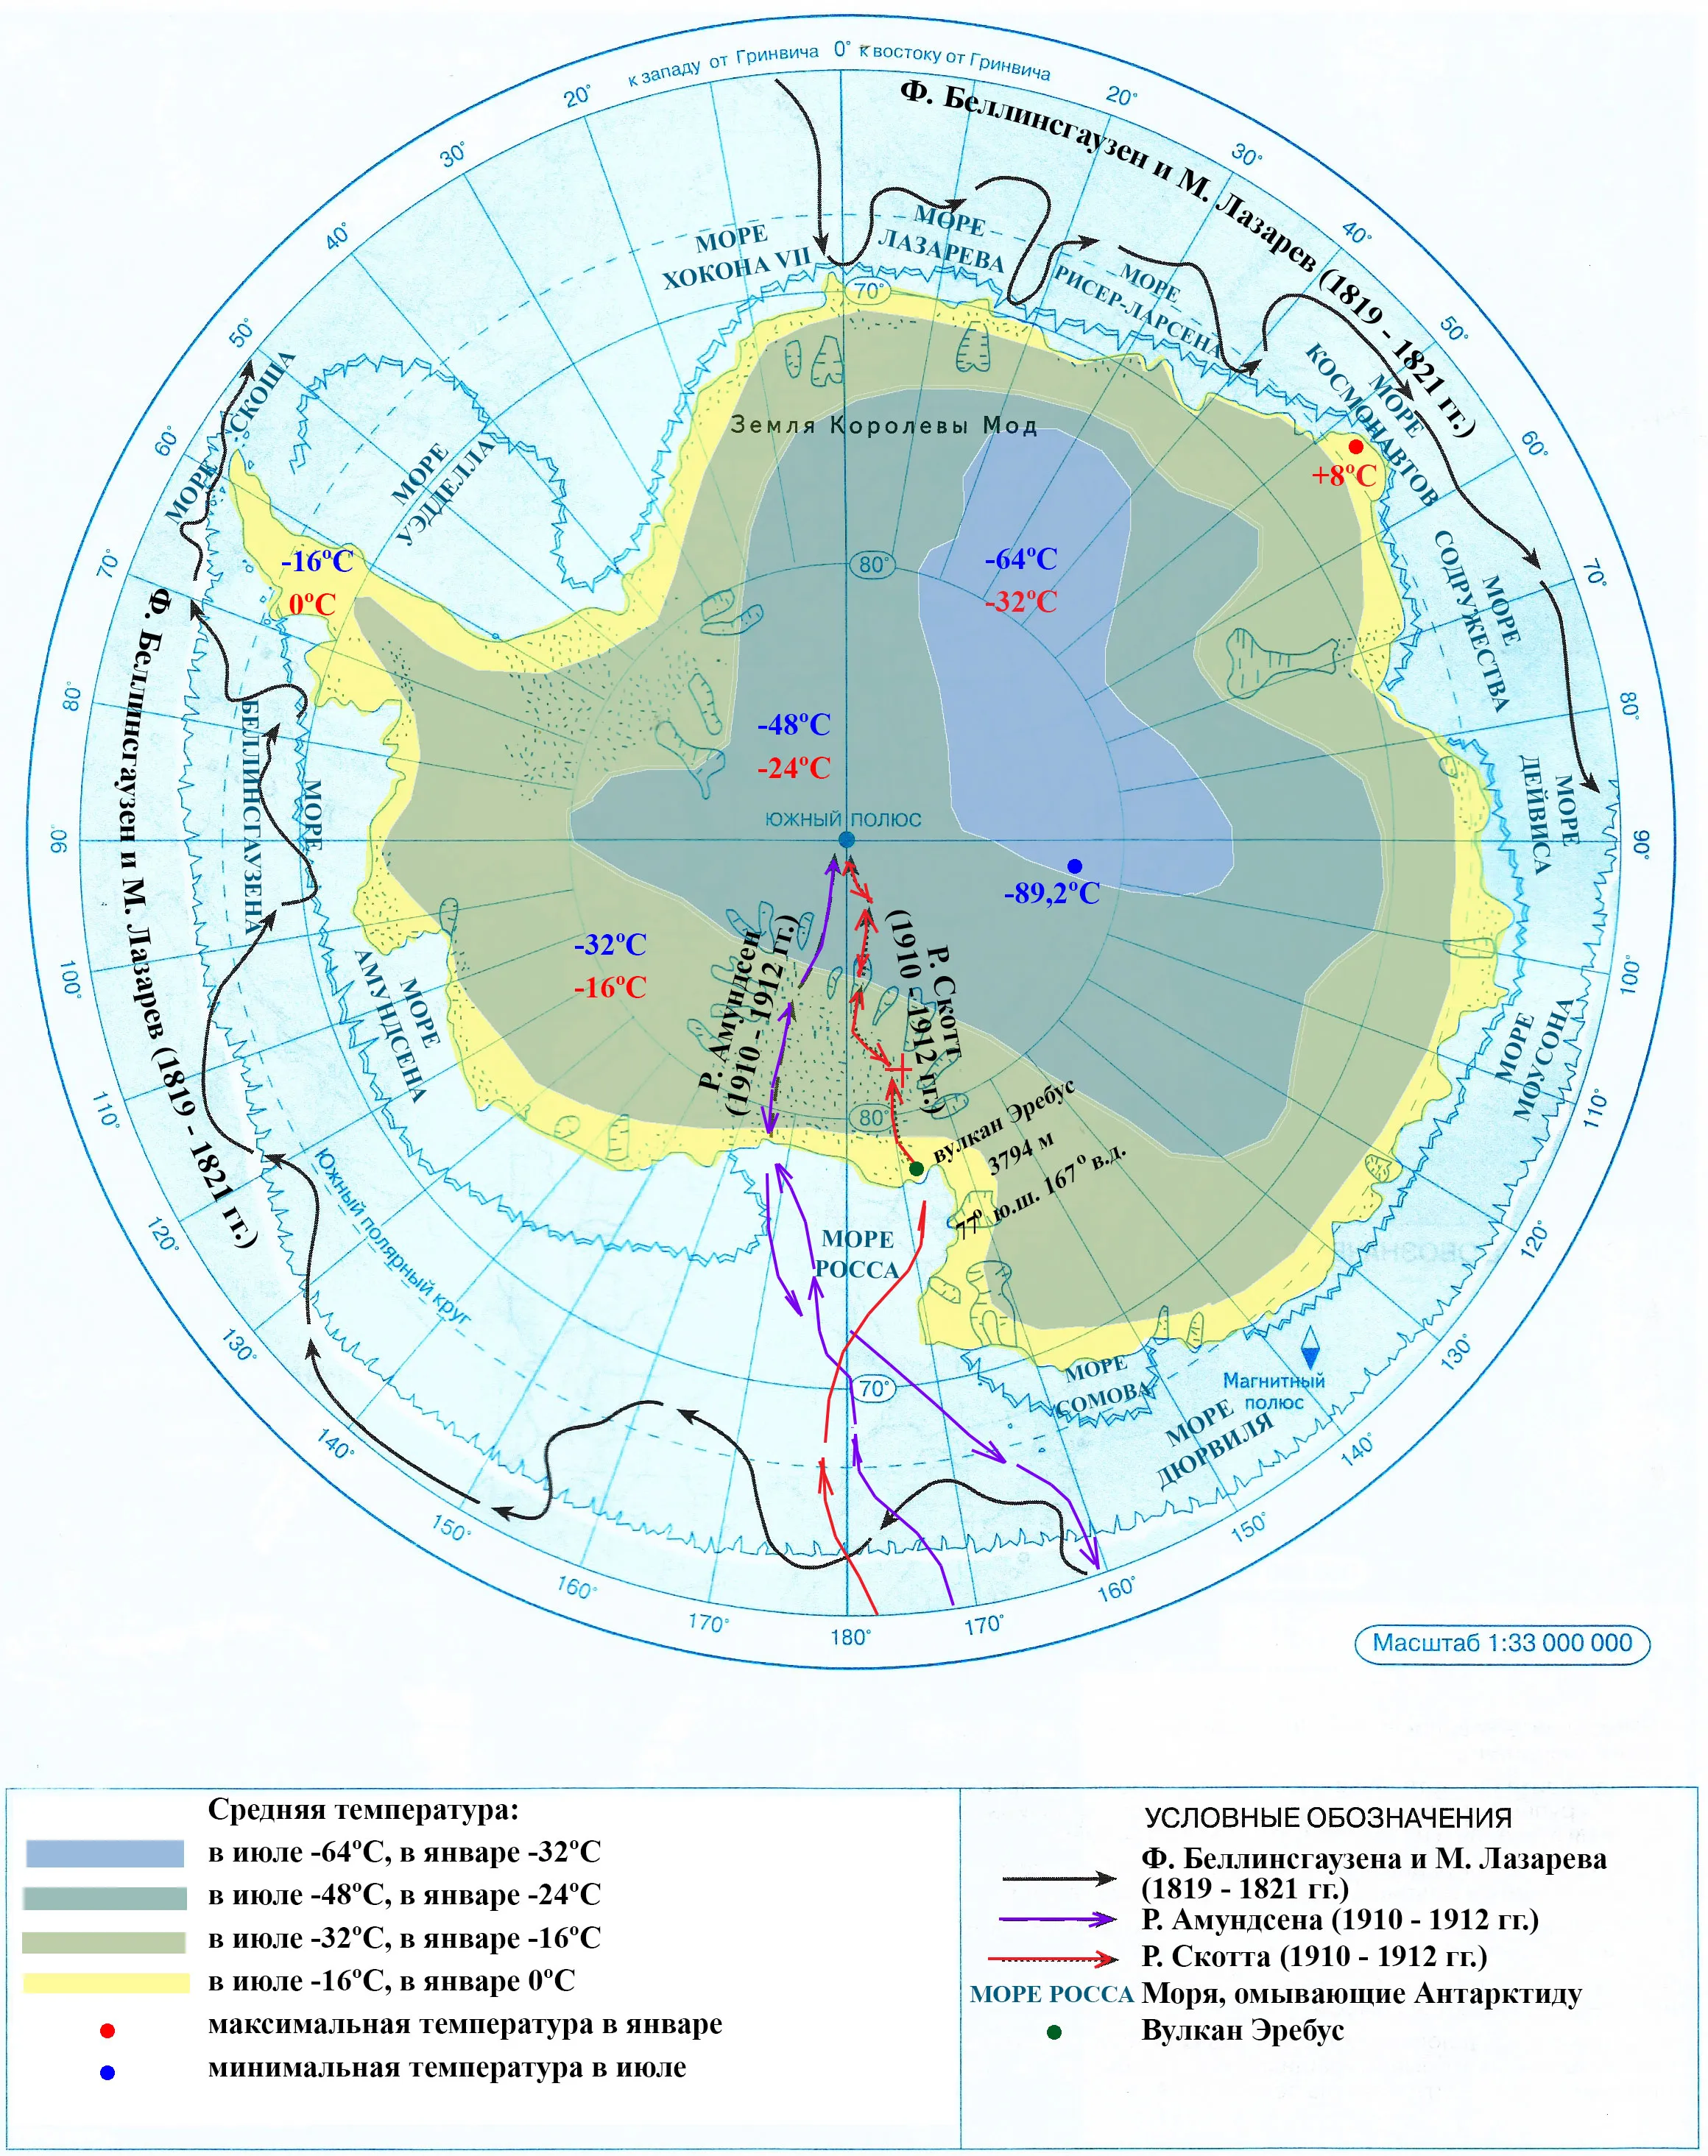 Контурная карта антарктиды 7 класс готовая. Рельеф Антарктиды на контурной карте. Вулкан Эребус в Антарктиде. Вулкан Эребус на карте Антарктиды. Контурные карты 7 класс Дрофа ответы Антарктида.